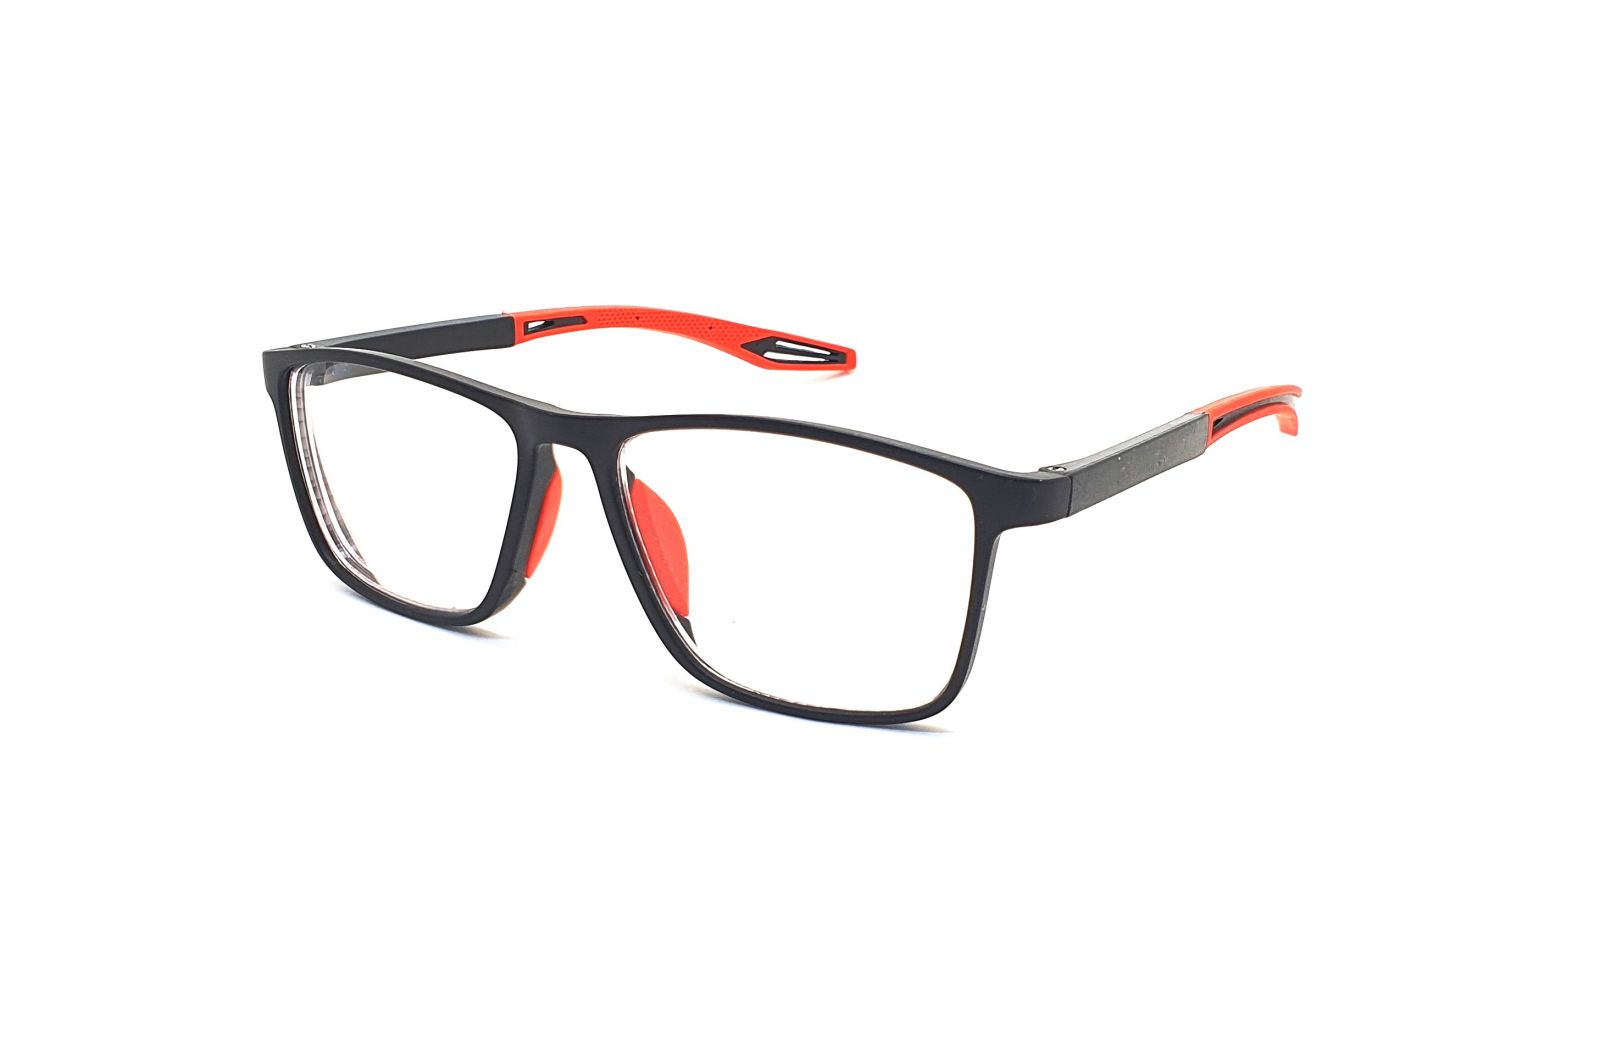 Samozabarvovací dioptrické brýle F04 / -1,00 black/red